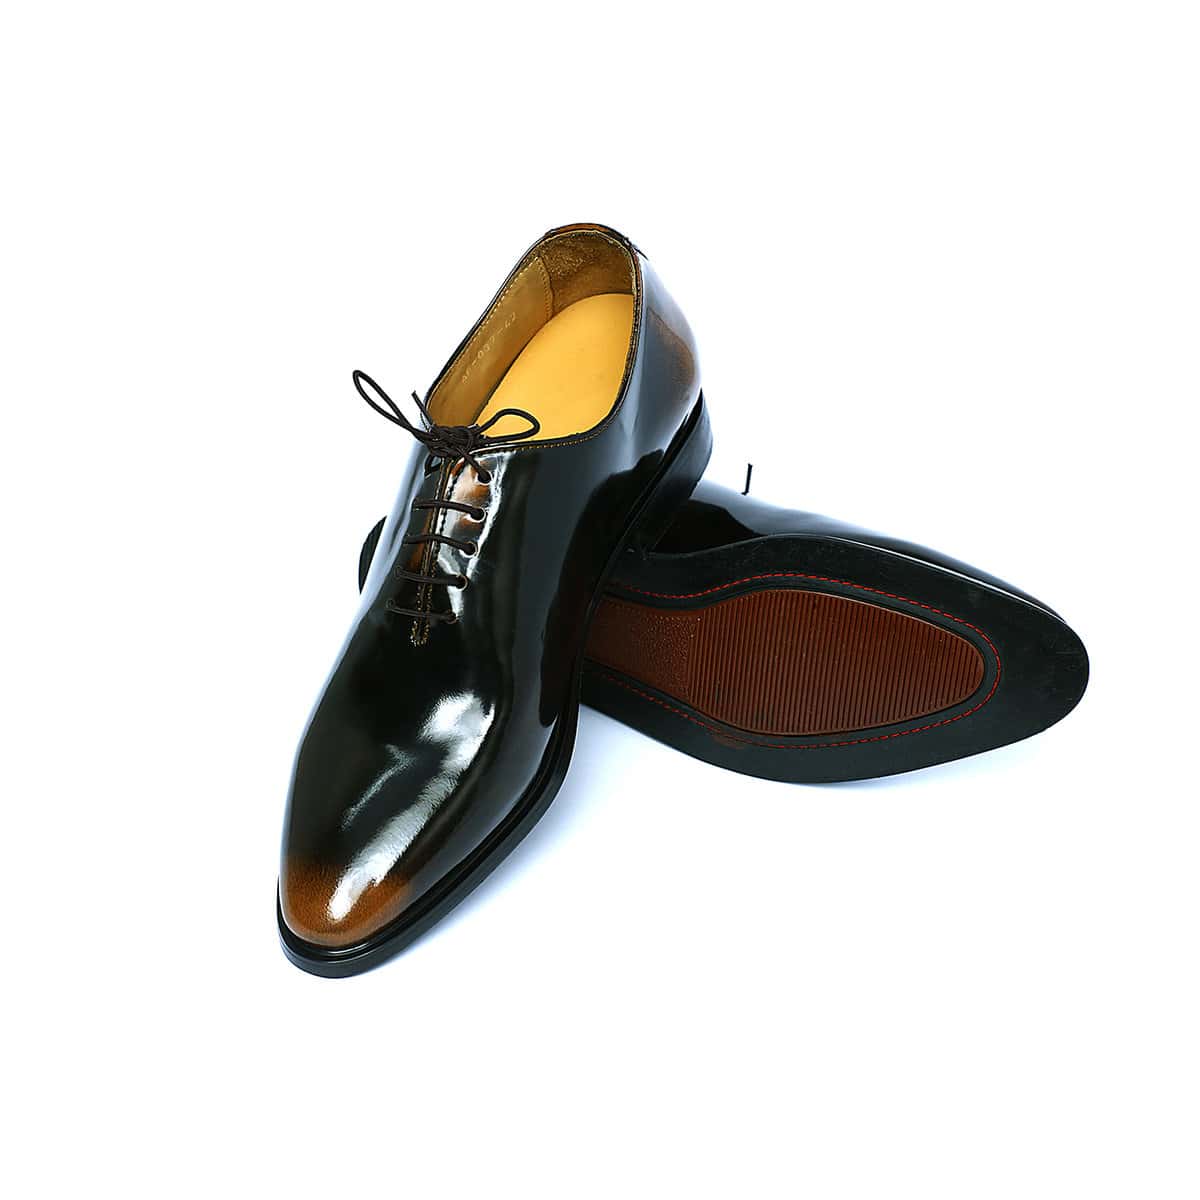 Bbl37x – Premium Leather Shoes – 6.5 Cm Taller